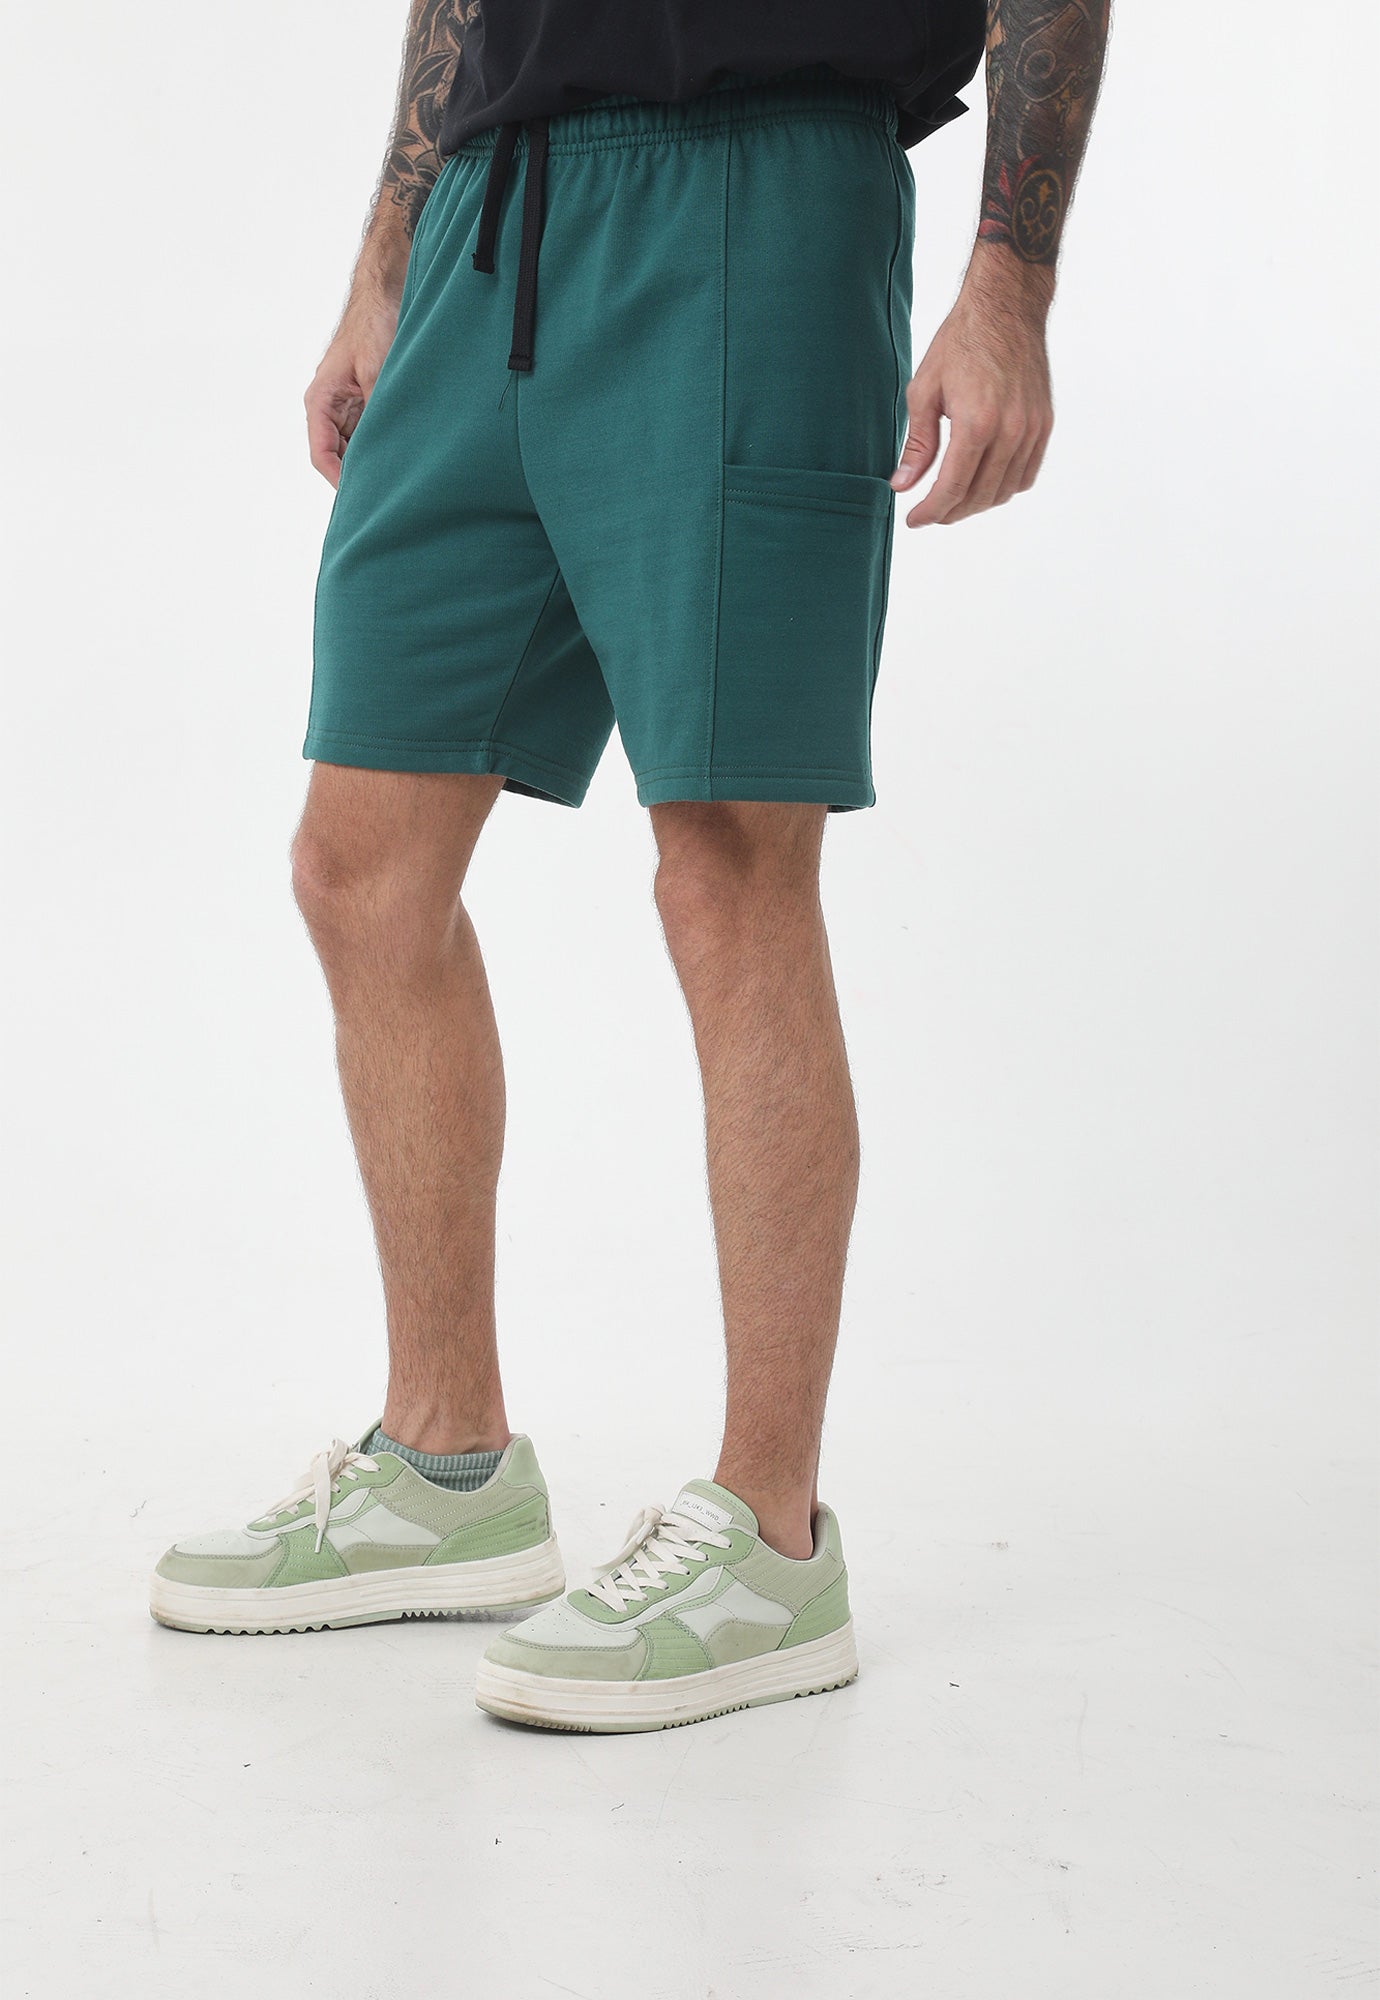 Bermuda verde oscuro fondo entero, silueta amplia y bolsillos laterales para hombre